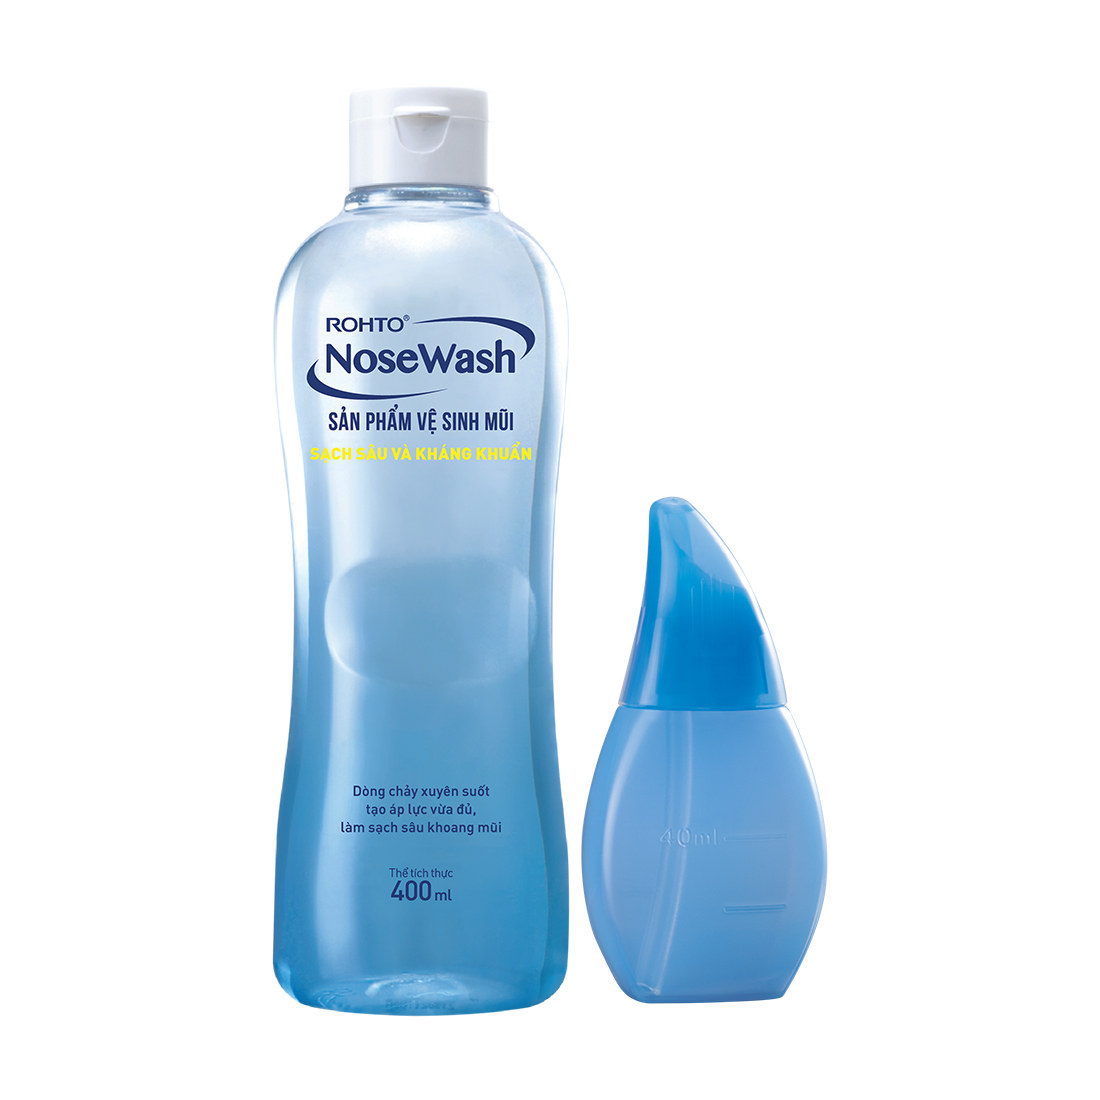 Bộ vệ sinh mũi ROHTO NoseWash làm sạch sâu và kháng khuẩn (1 bình vệ sinh mũi chuyên dụng + 1 bình dung dịch 400ml)